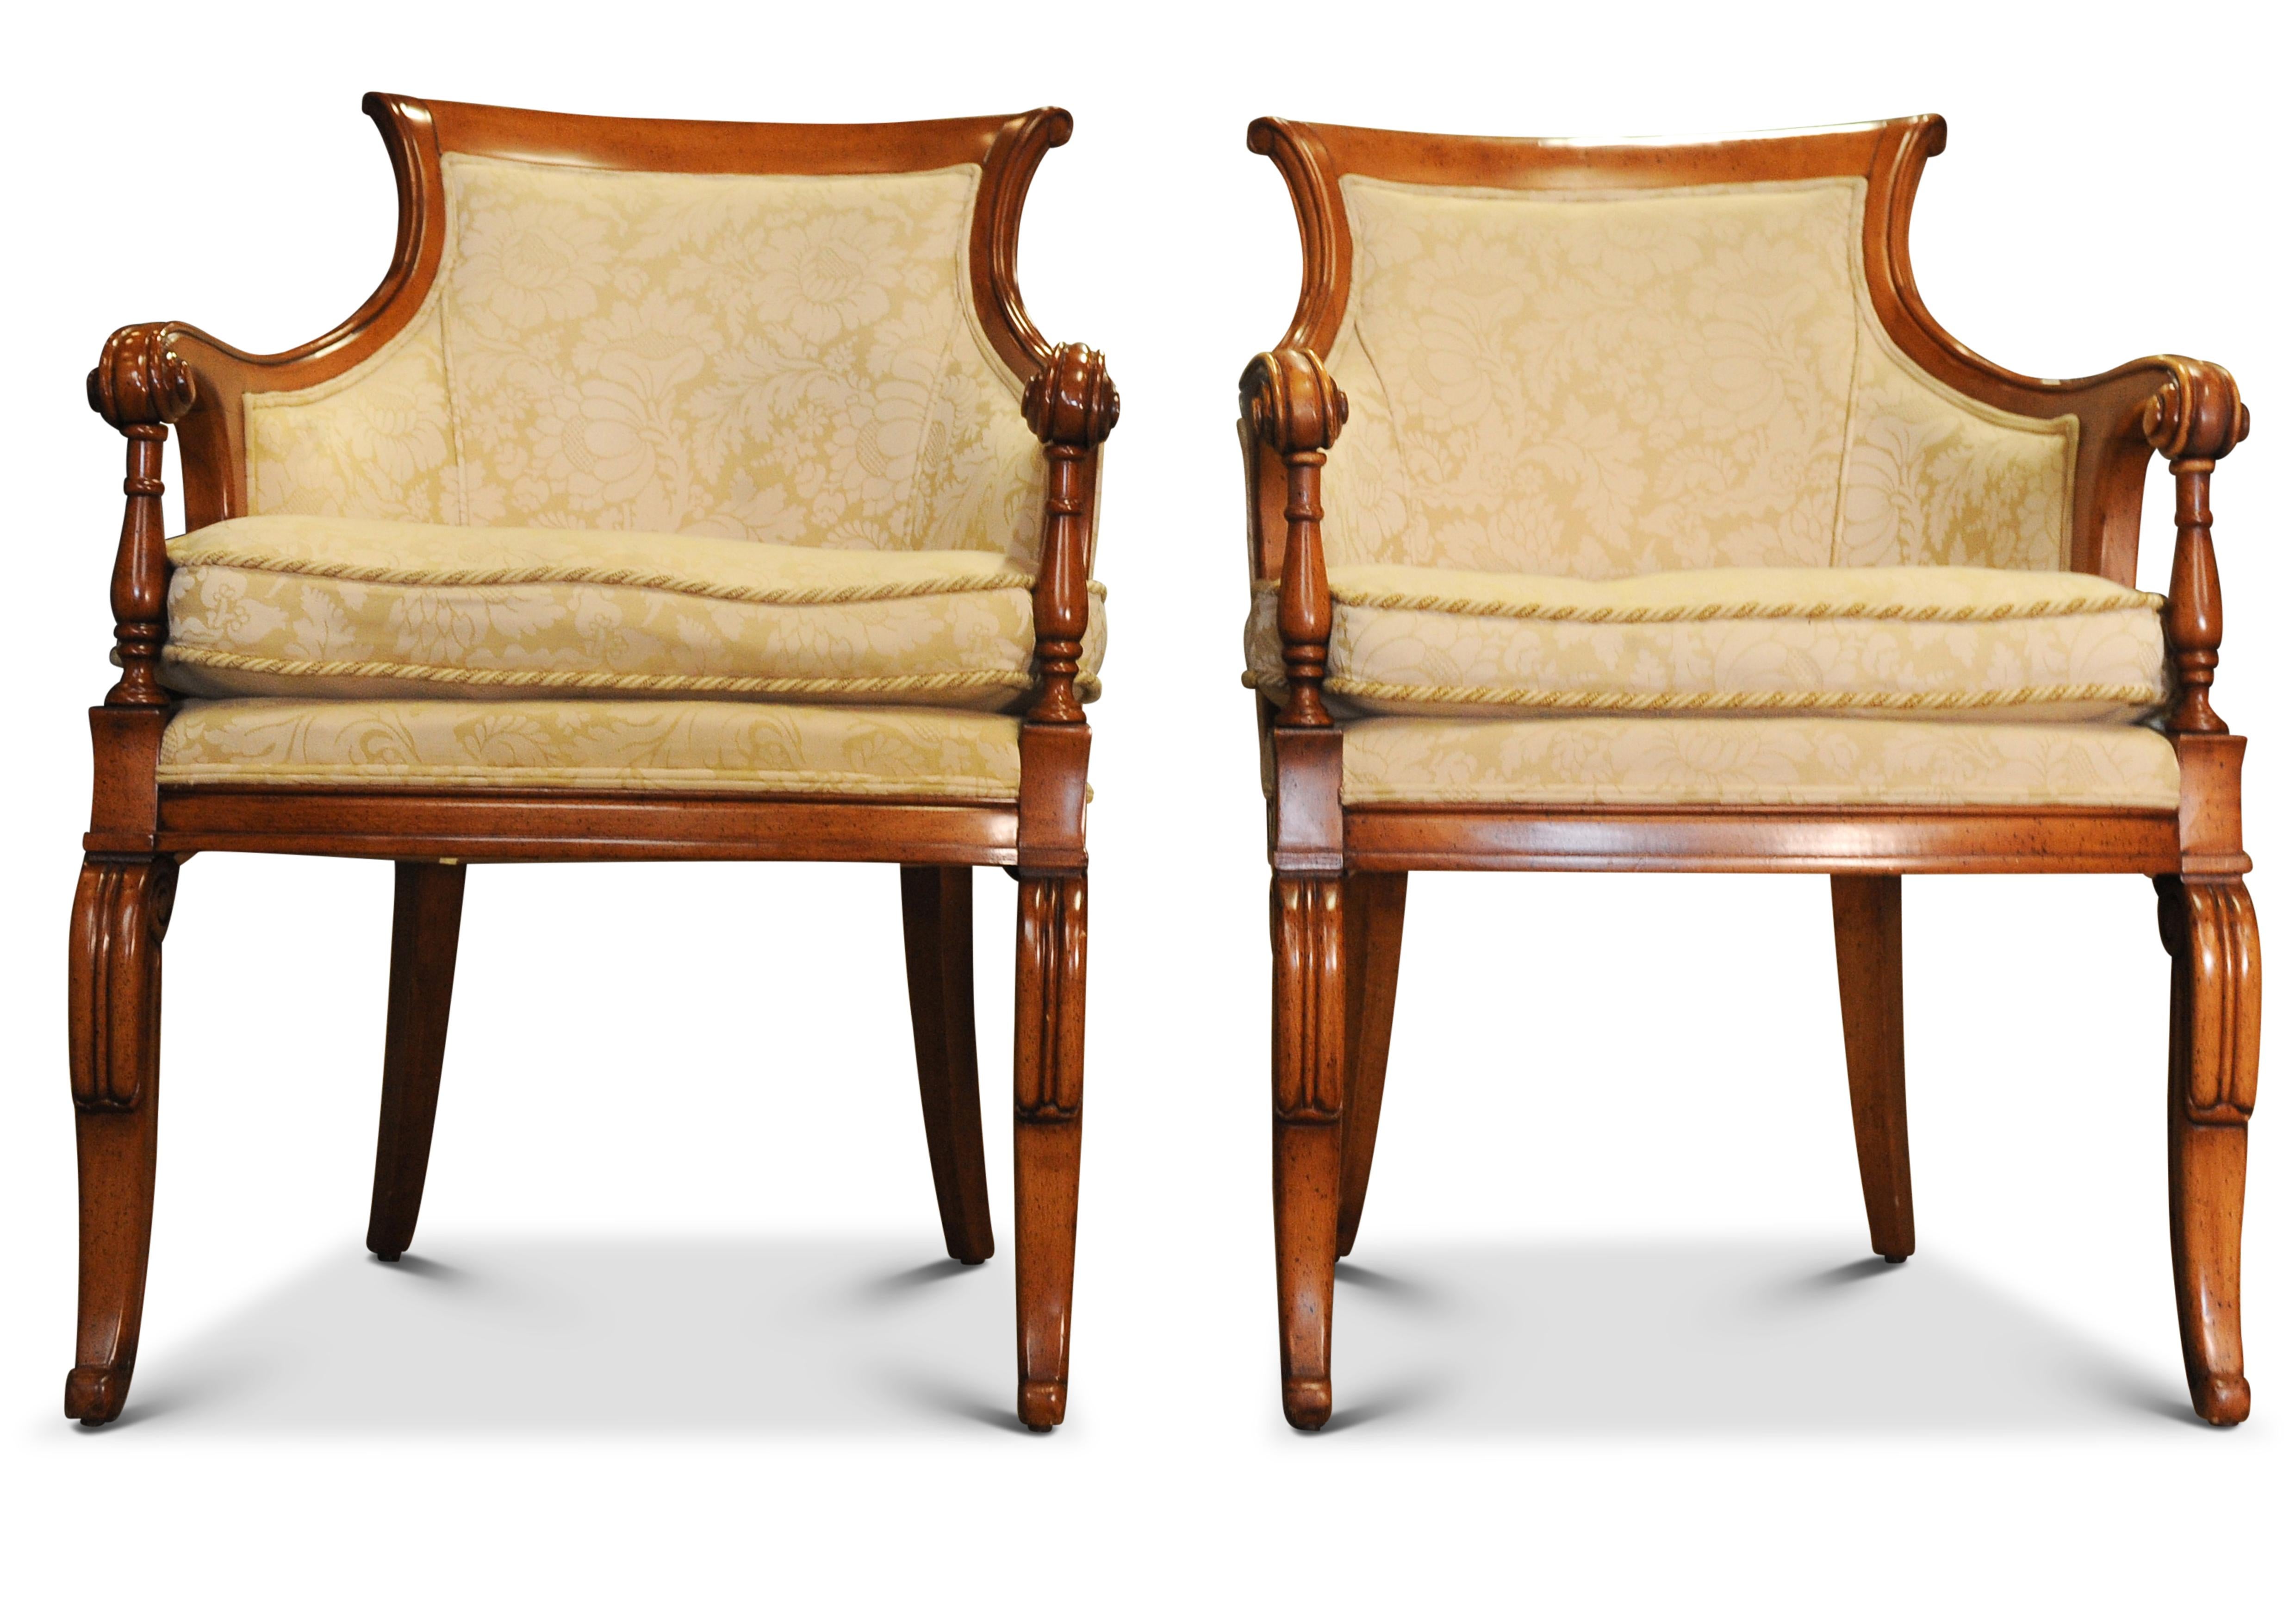 Elegante paire de chaises à accoudoirs en bergère du 20e siècle, Design/One, avec dossier à volutes, tapissées de damas crème. Parfait pour une bibliothèque, un bureau ou un espace de détente.

Hauteur des bras 67,5 cm
Hauteur de l'assise